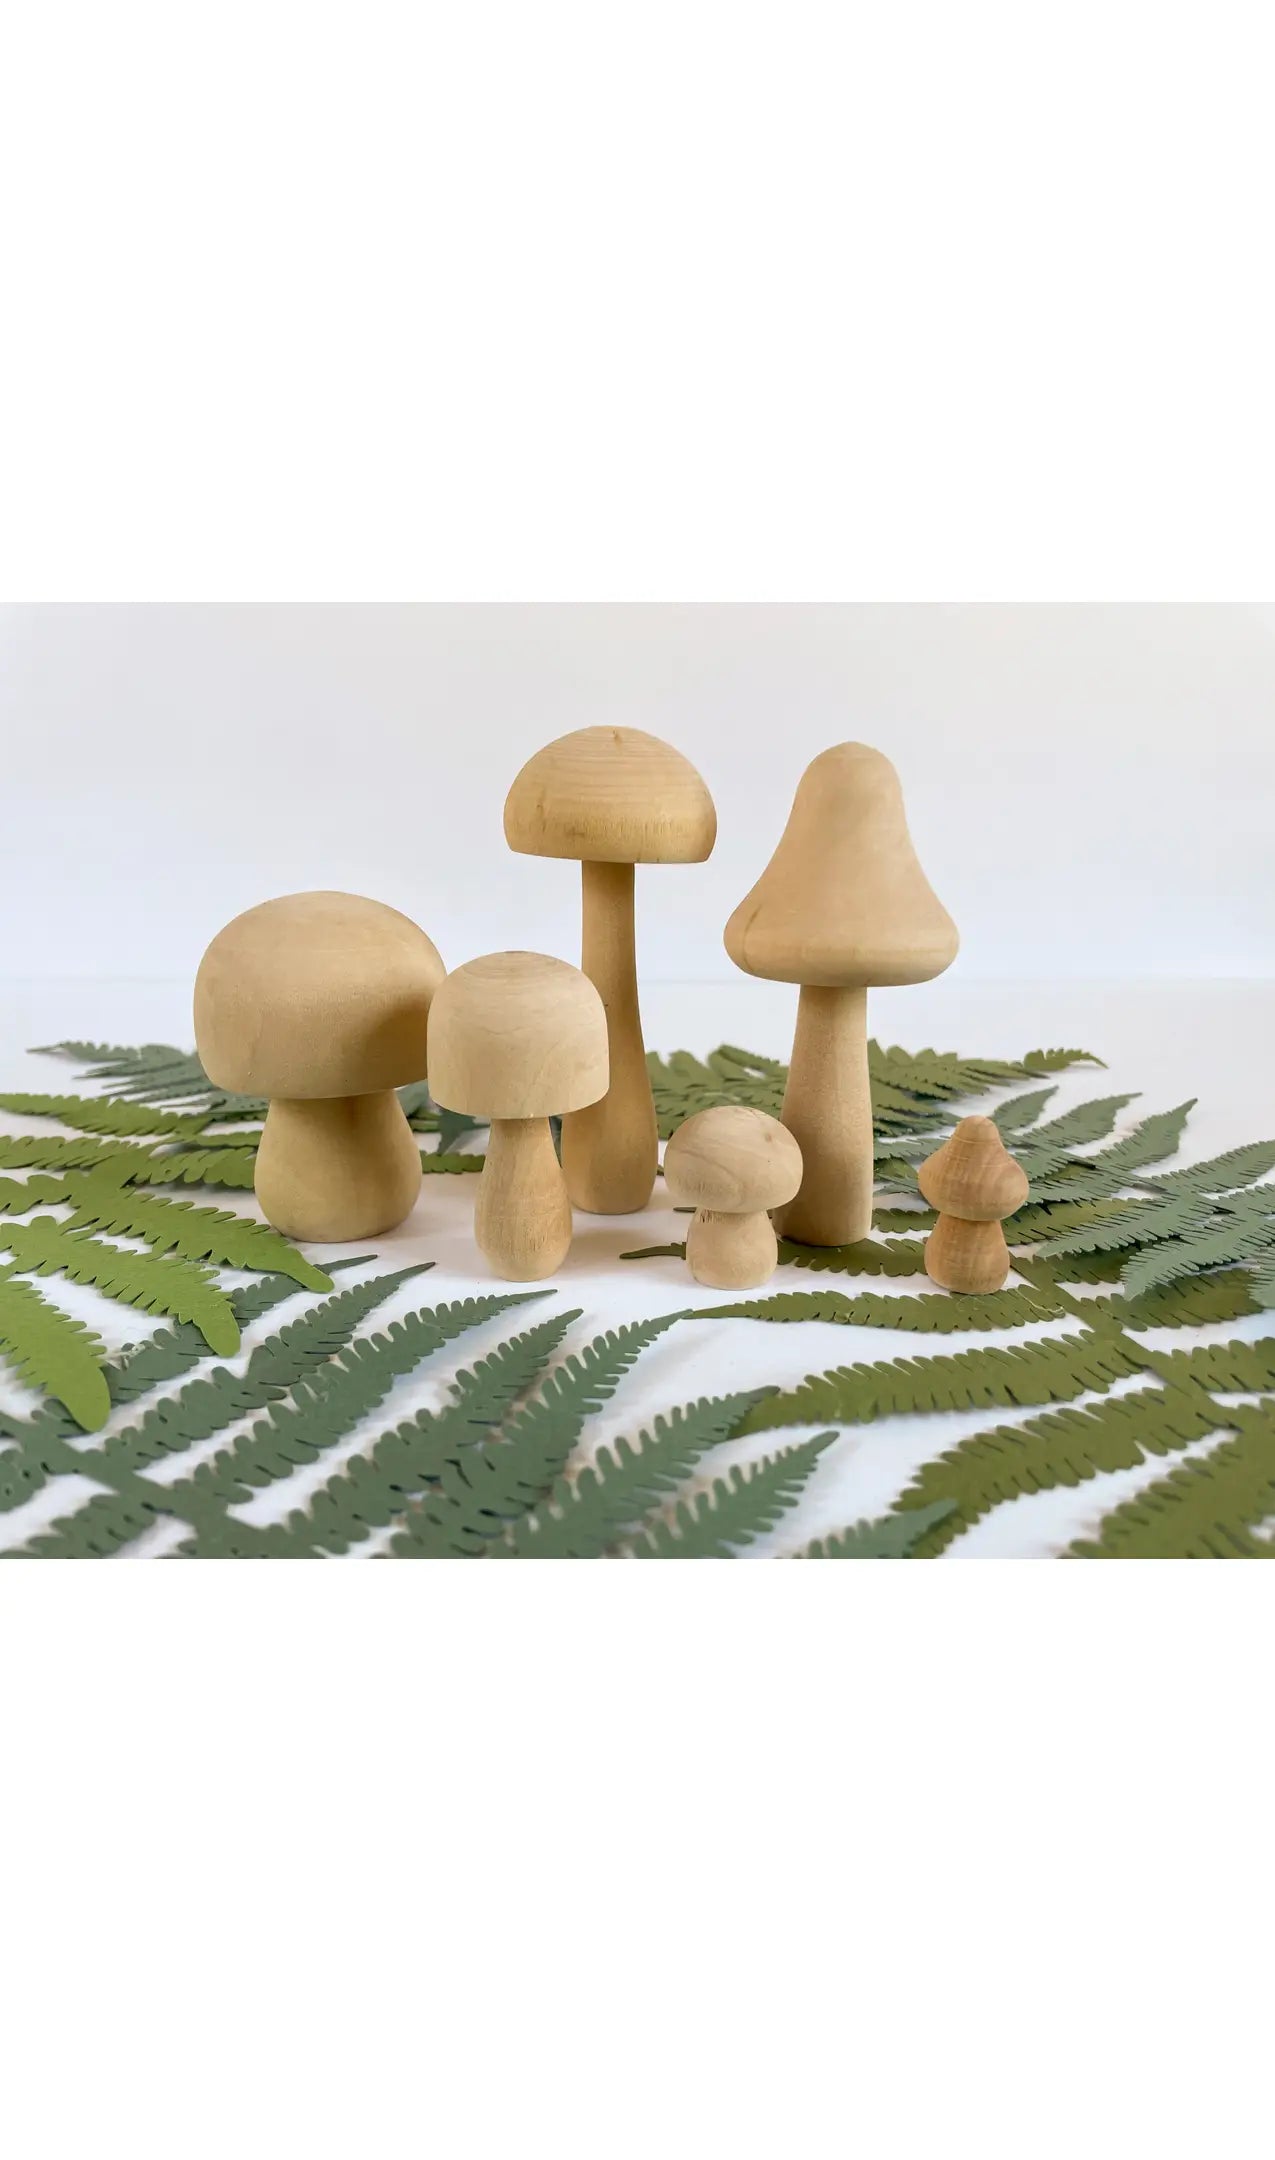 diy wooden mushroom painting kit by Bramble Workshop